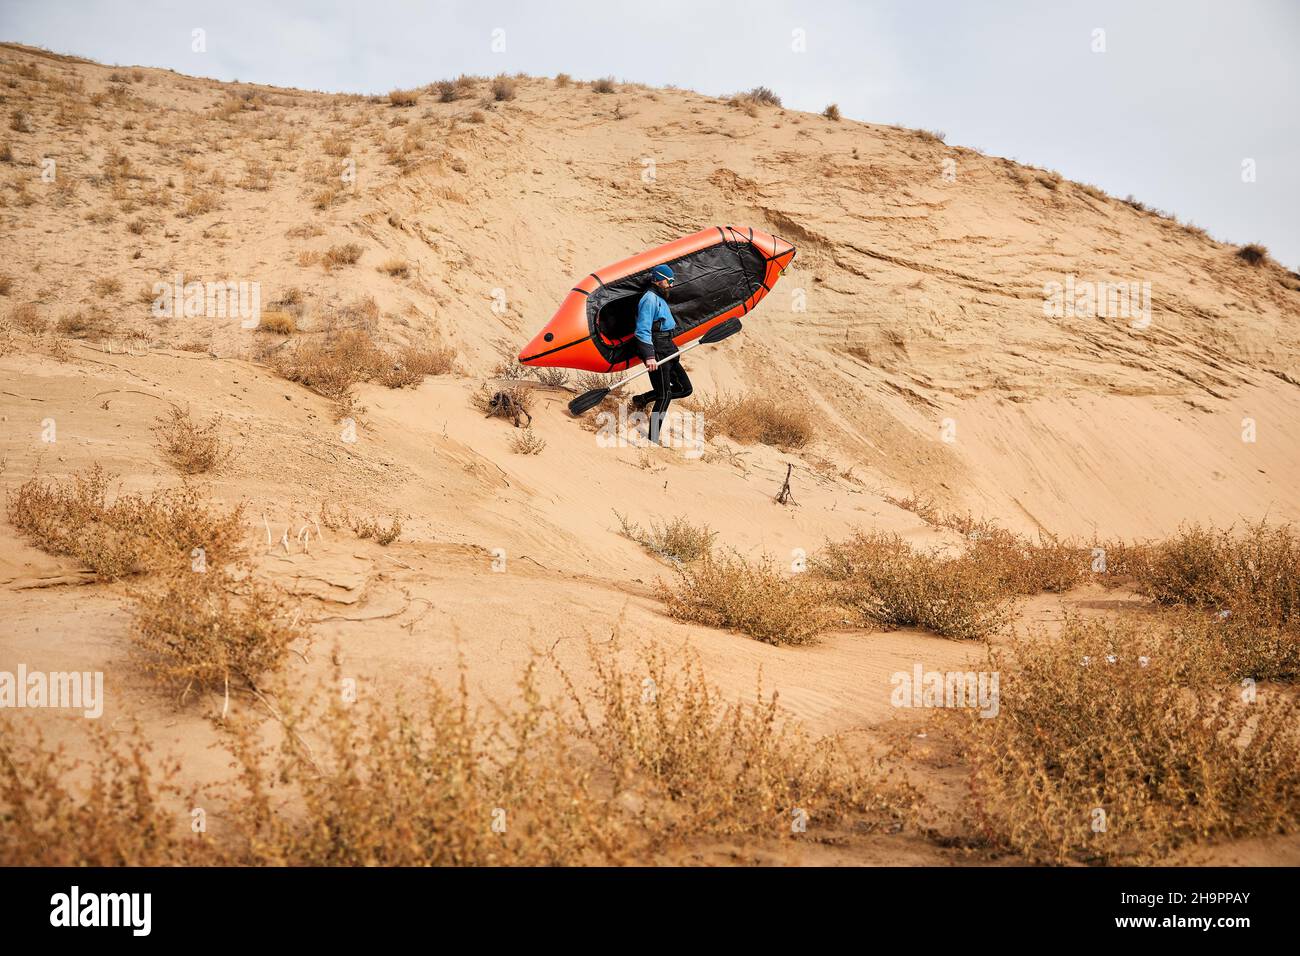 Anciano con barba negra en chaqueta azul sosteniendo bote deportivo naranja balsa en dunas de arena en el fondo del desierto. Concepto de aventura y viaje. Foto de stock